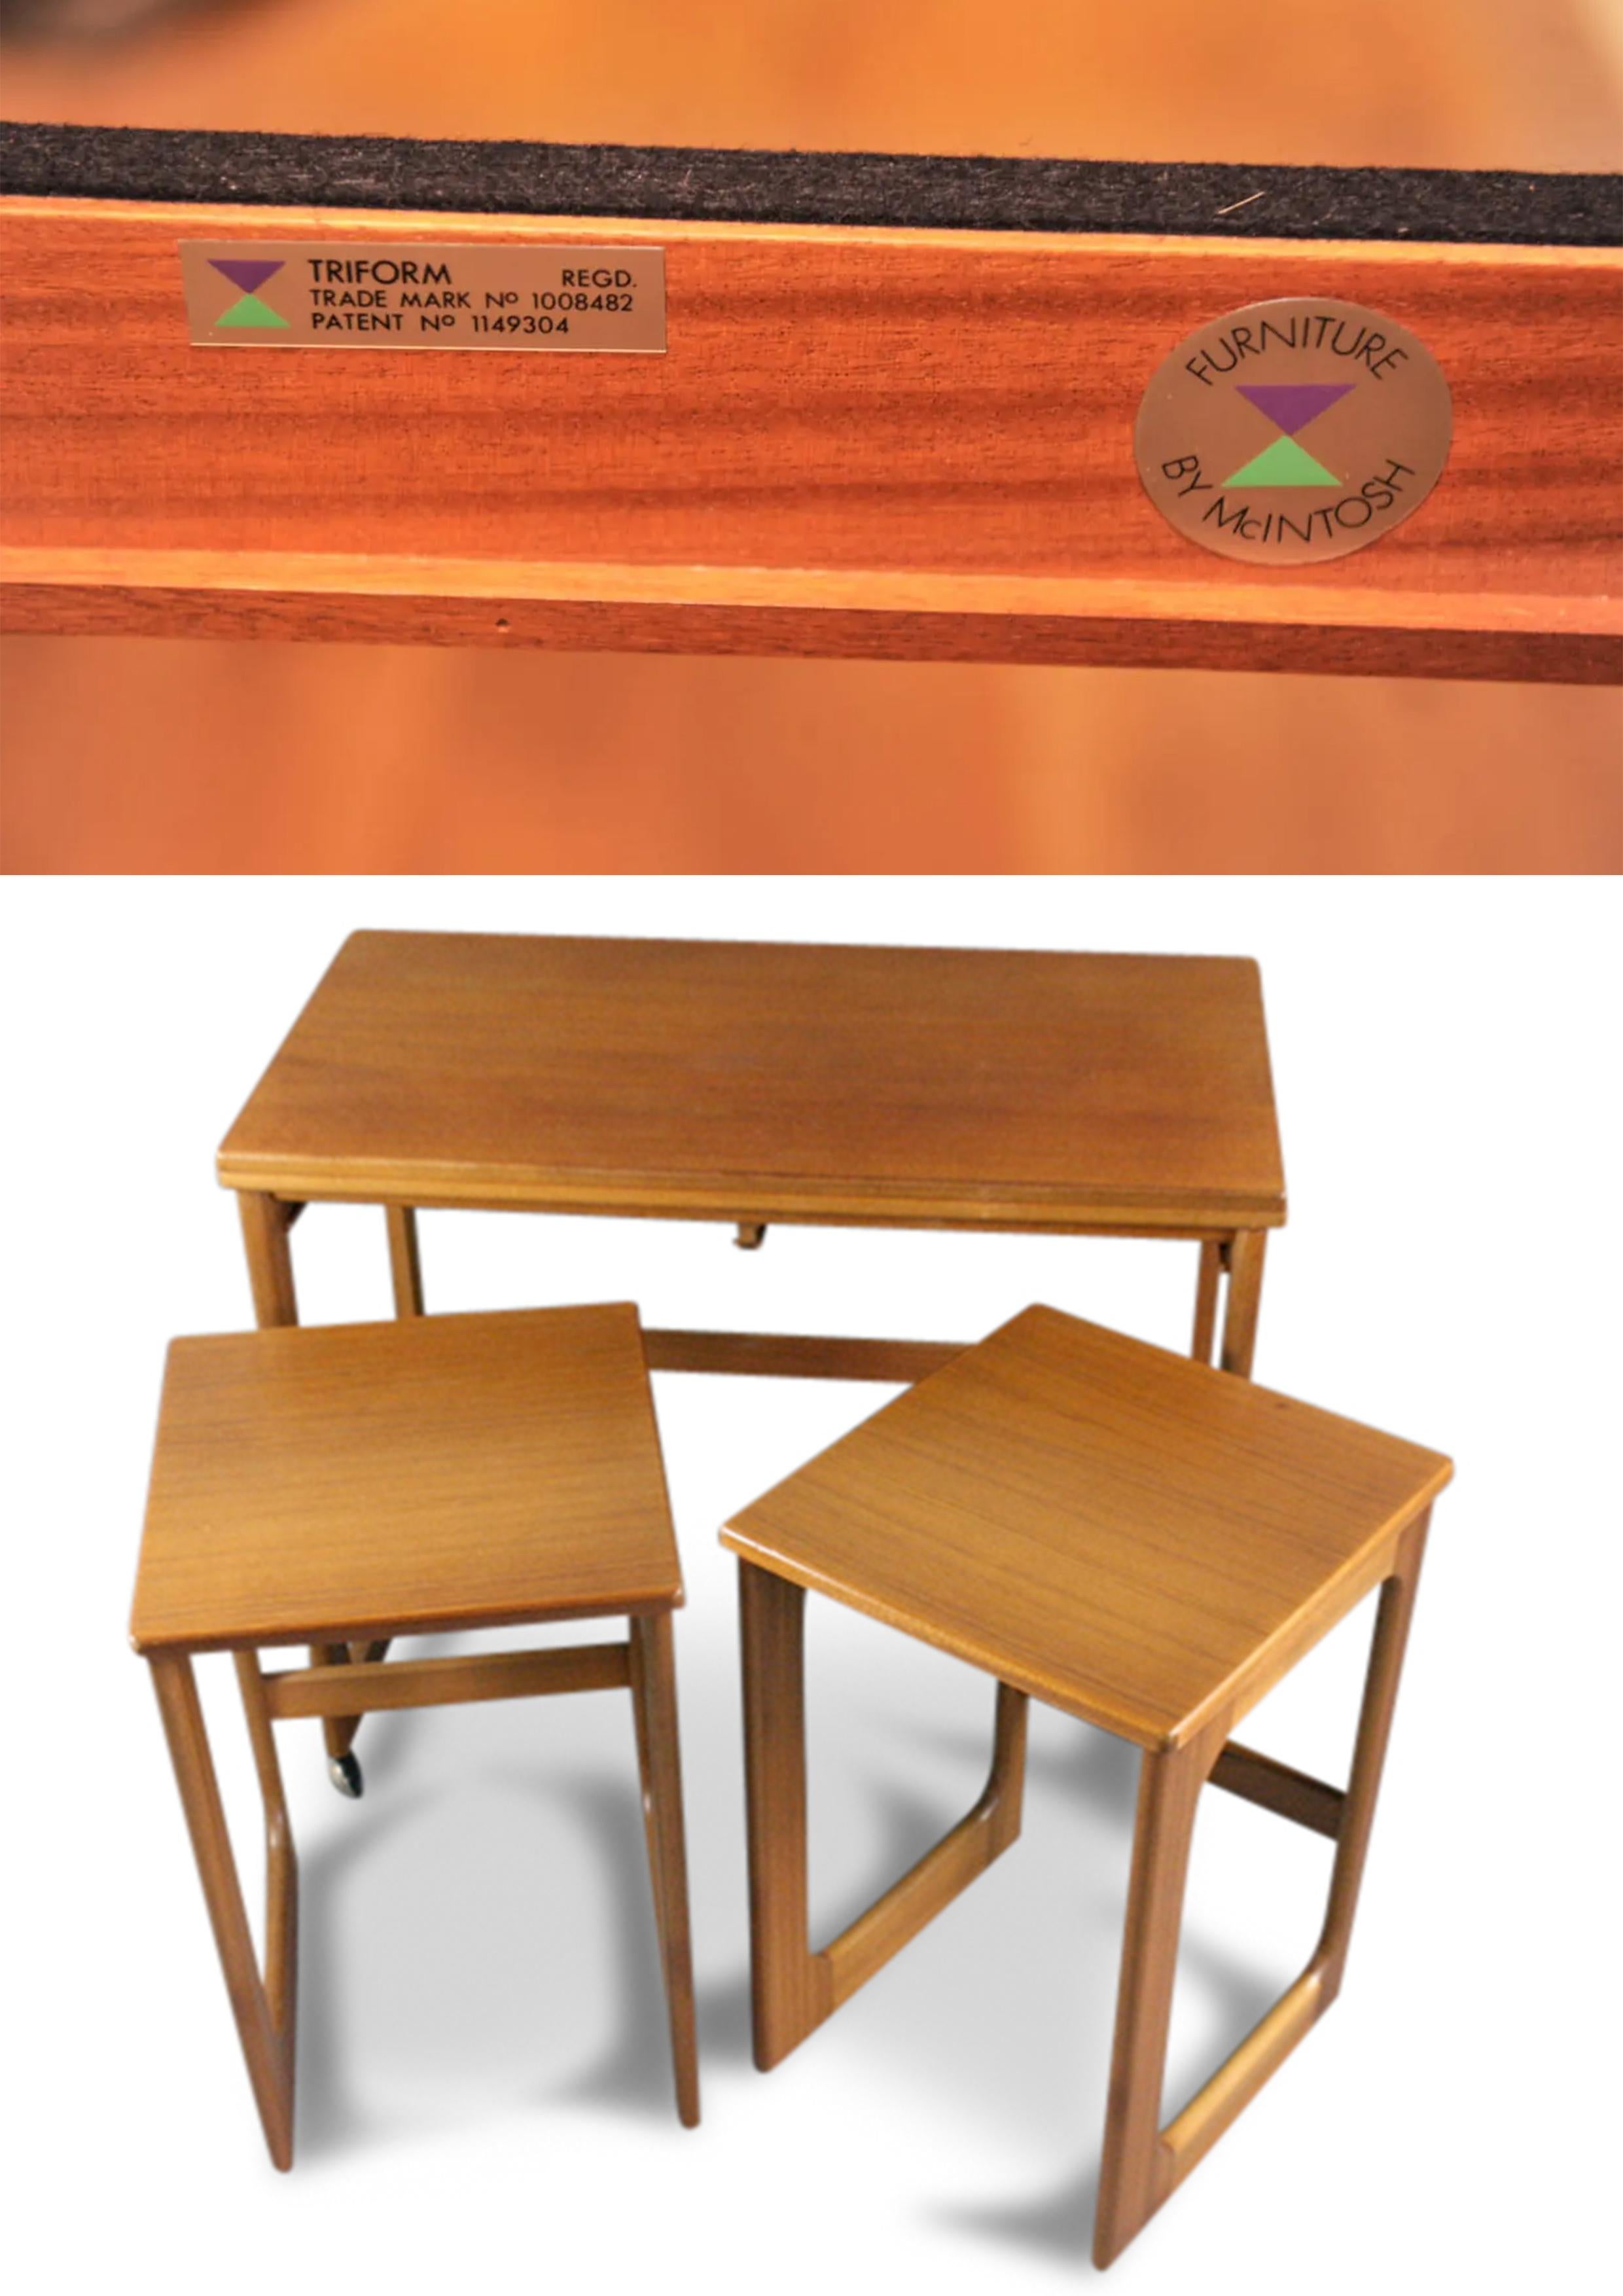 Mcintosh Tri-Form Metamorphic Twist & Turn Langthorne Nesting Tables Made in Kirkaldy Scotland 1960's

Merveilleuses tables élégantes, qui s'ouvrent pour doubler l'espace de la table lorsque vous recevez des invités, et qui coulissent pour offrir